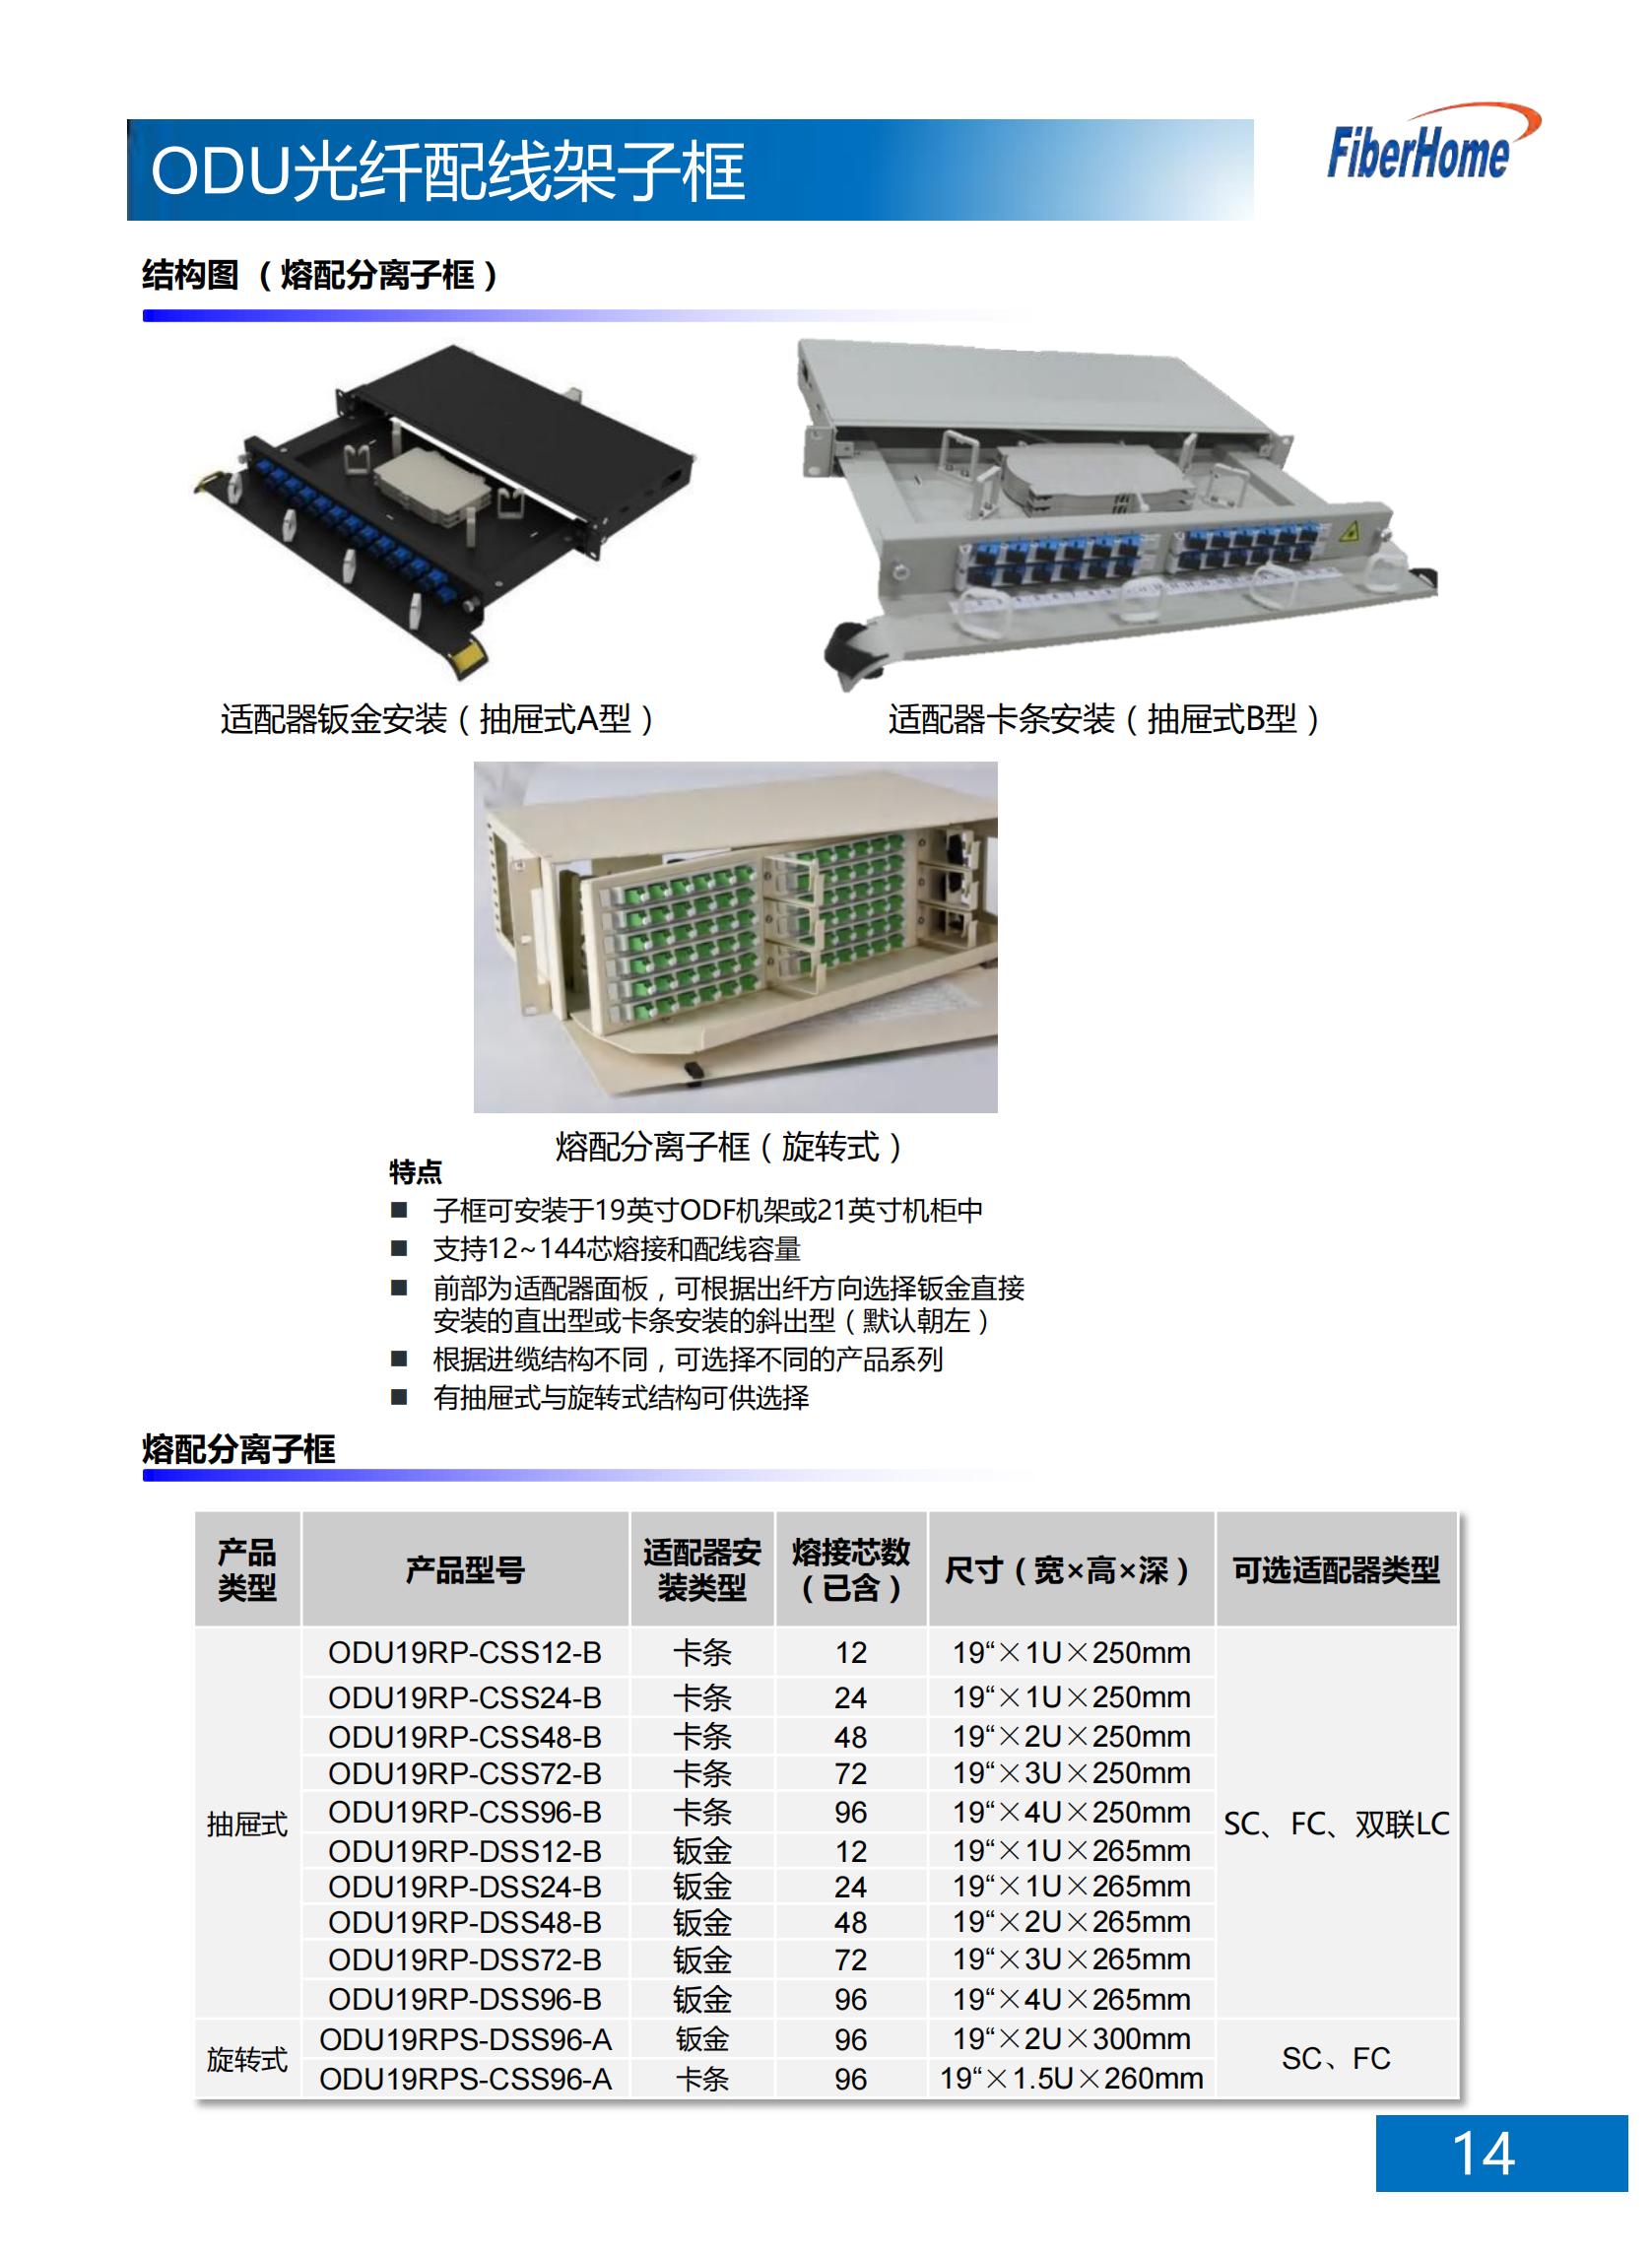 12芯 ODU光纤配线架子框 ODU19T-A12-A-SC （含12芯SC熔配一体化单元*1）